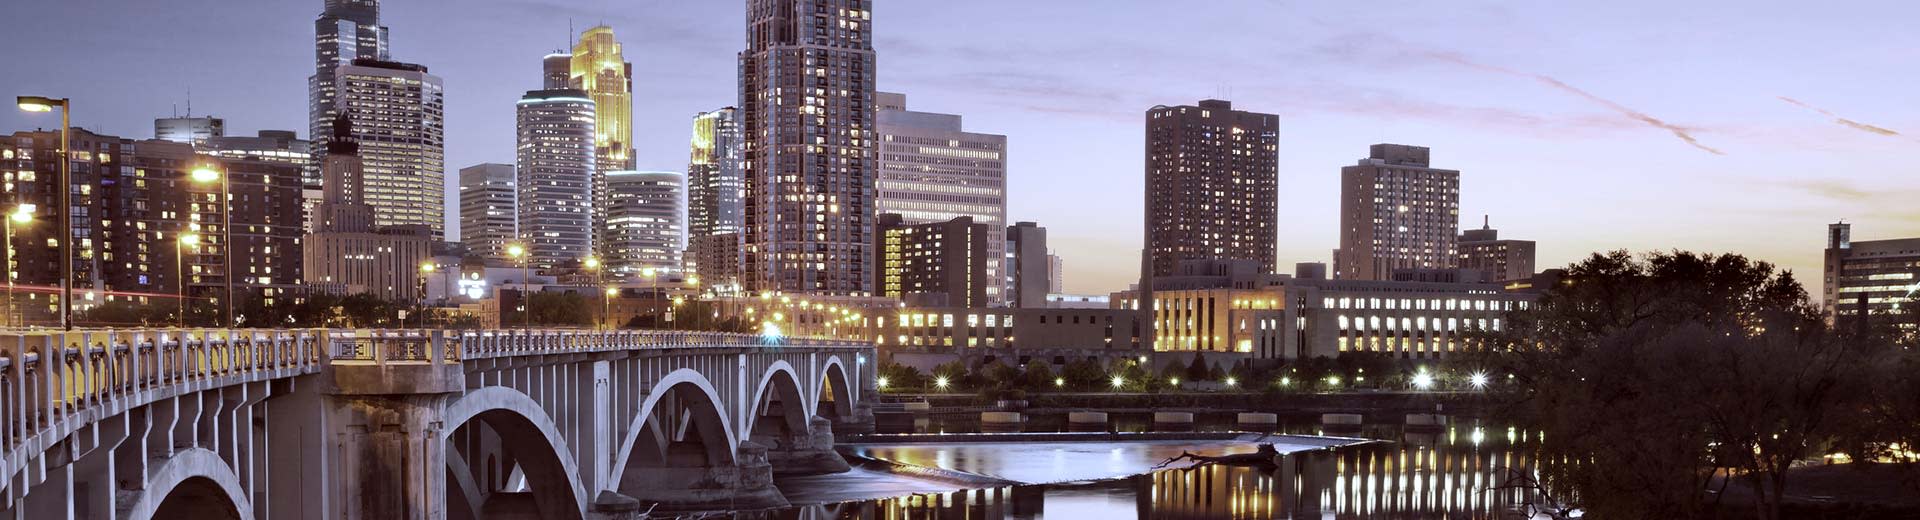 Un puente y rascacielos de gran altura iluminan el cielo sobre Minneapolis.